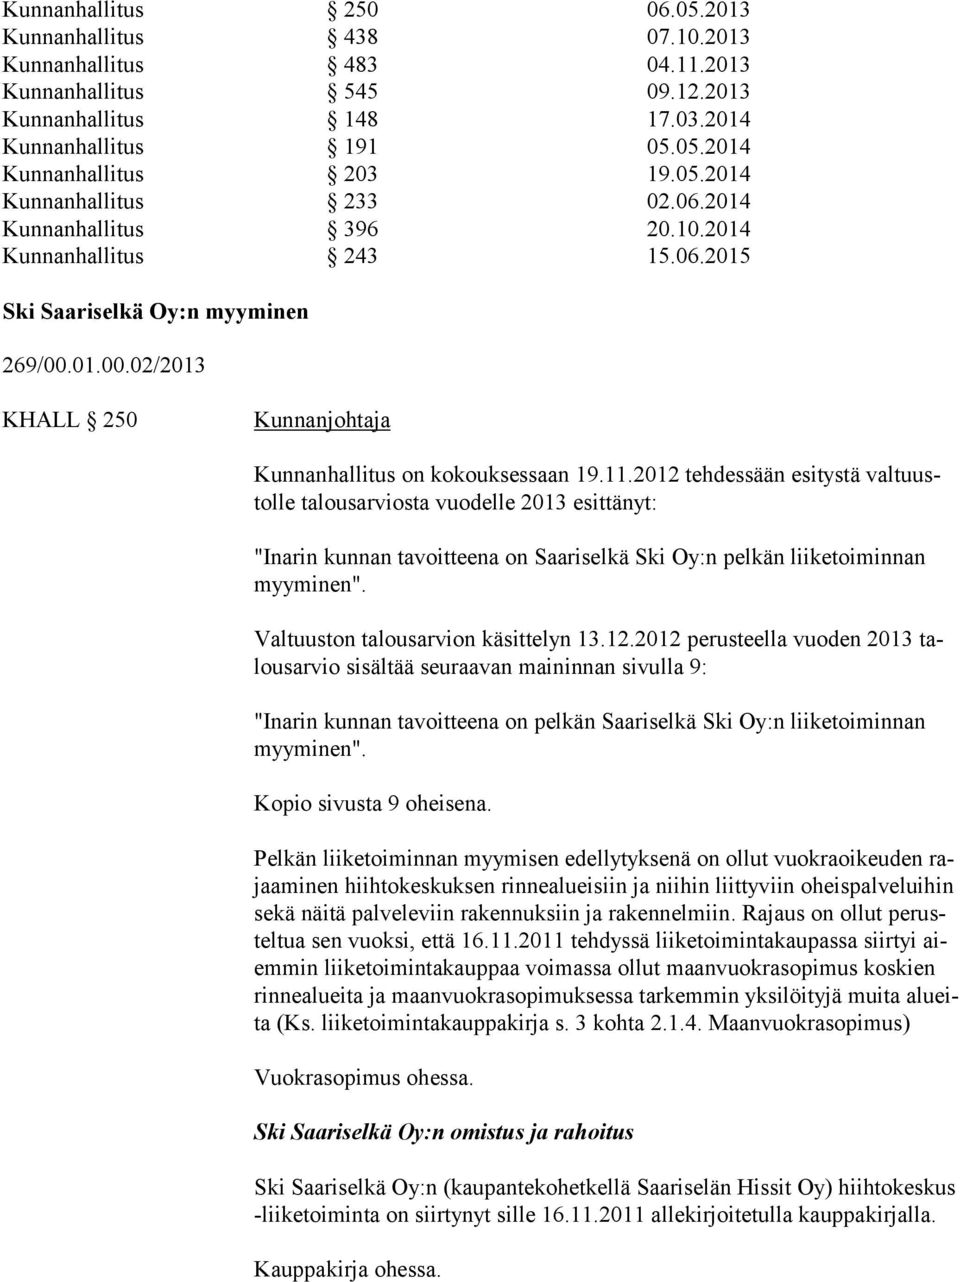 2012 tehdessään esitystä valtuustolle talousarviosta vuodelle 2013 esittänyt: "Inarin kunnan tavoitteena on Saariselkä Ski Oy:n pelkän liiketoiminnan myyminen". Valtuuston talousarvion käsittelyn 13.